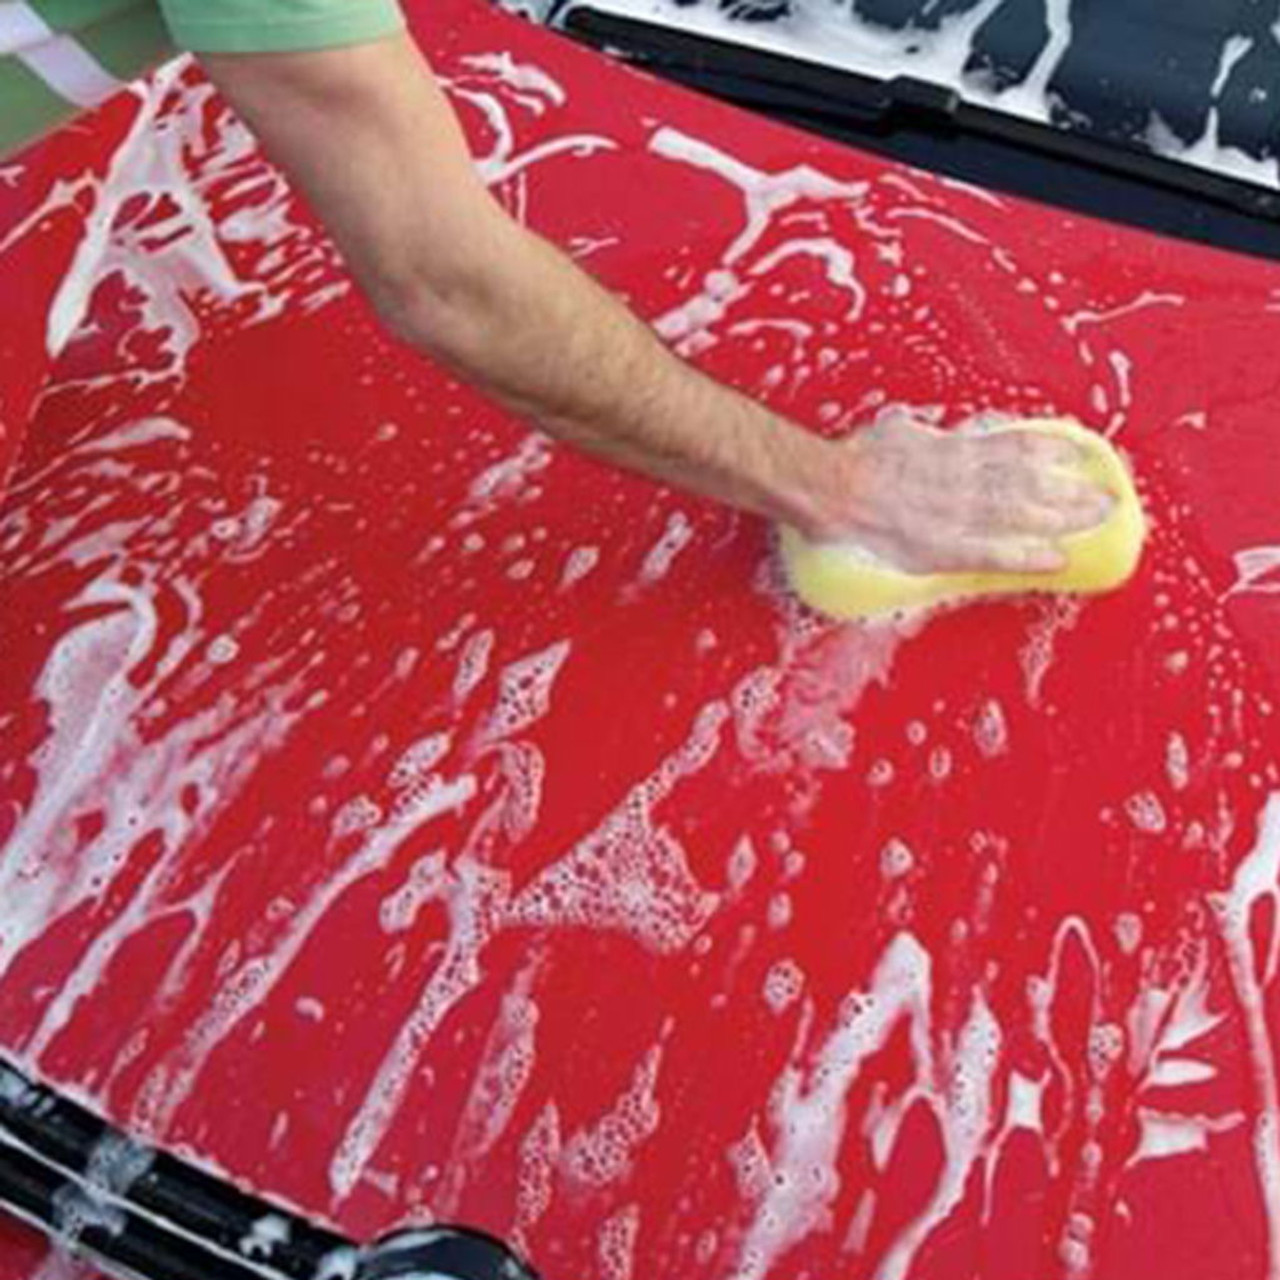 Turtle Wax Zip Wax Liquid Car Wash - 64 oz jug